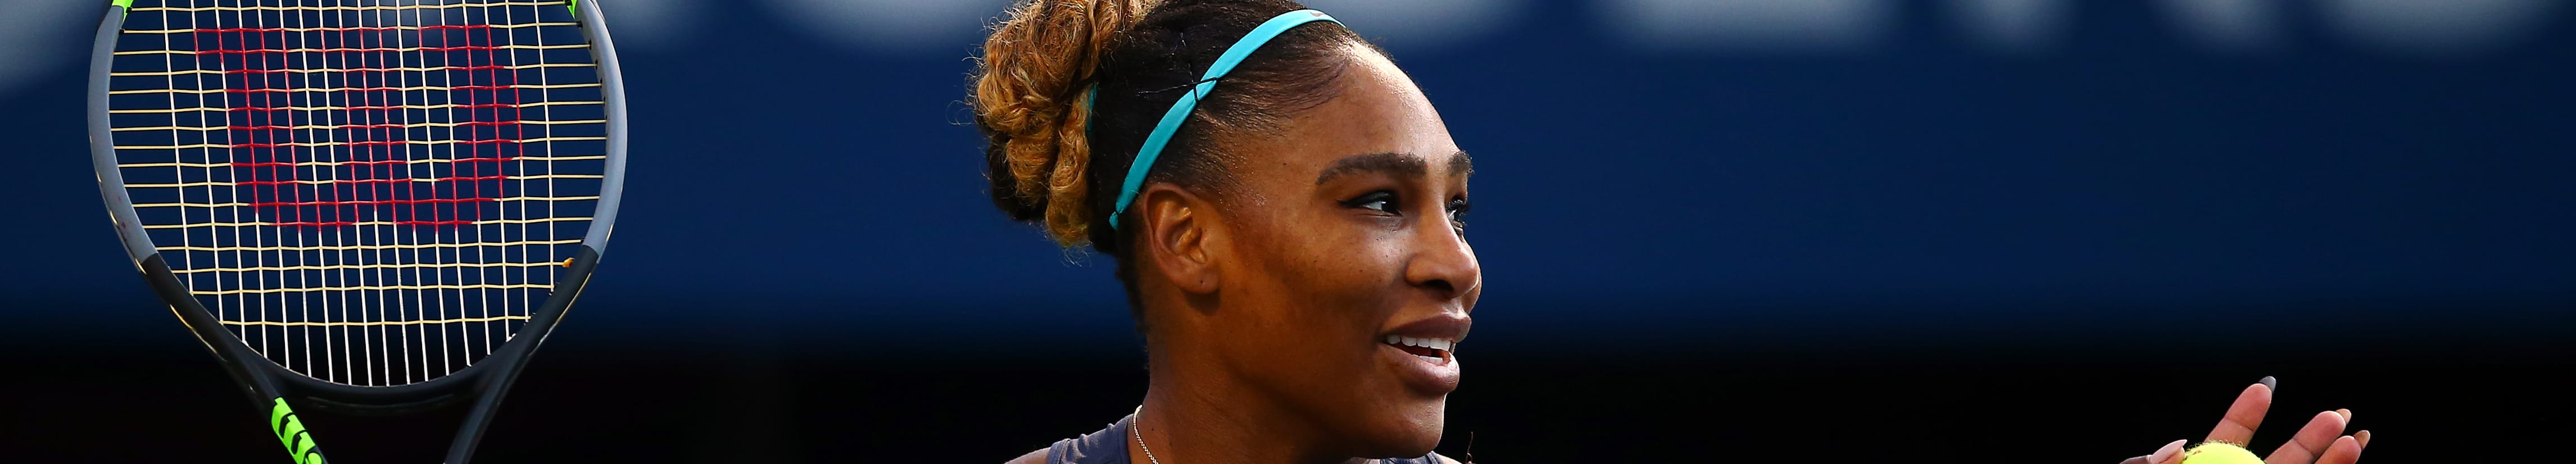 US Open, day 13: finale femminile, Serena a caccia dell'ennesimo record